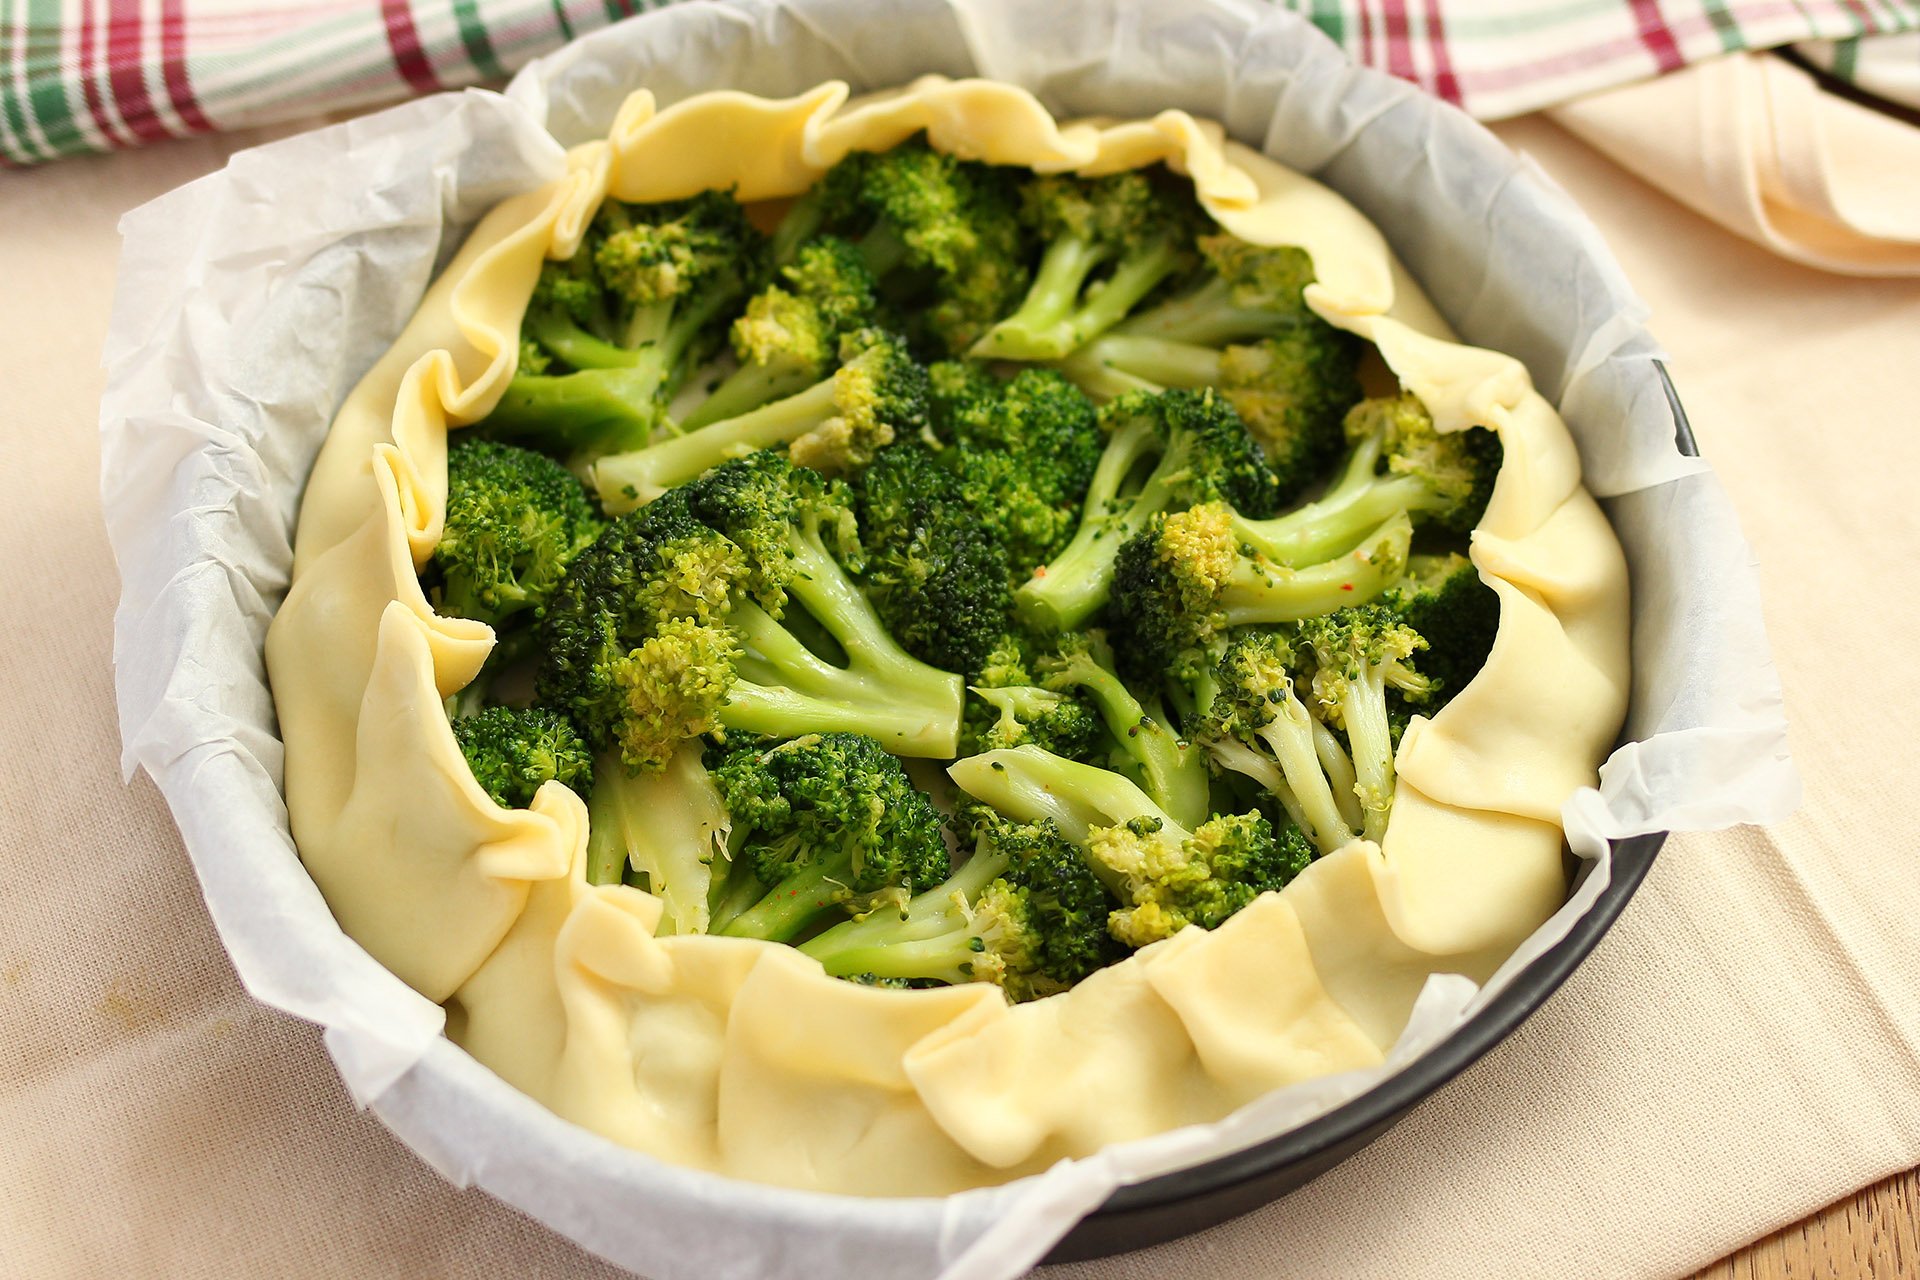 Torta rustica broccoletti e mozzarella - Step 2